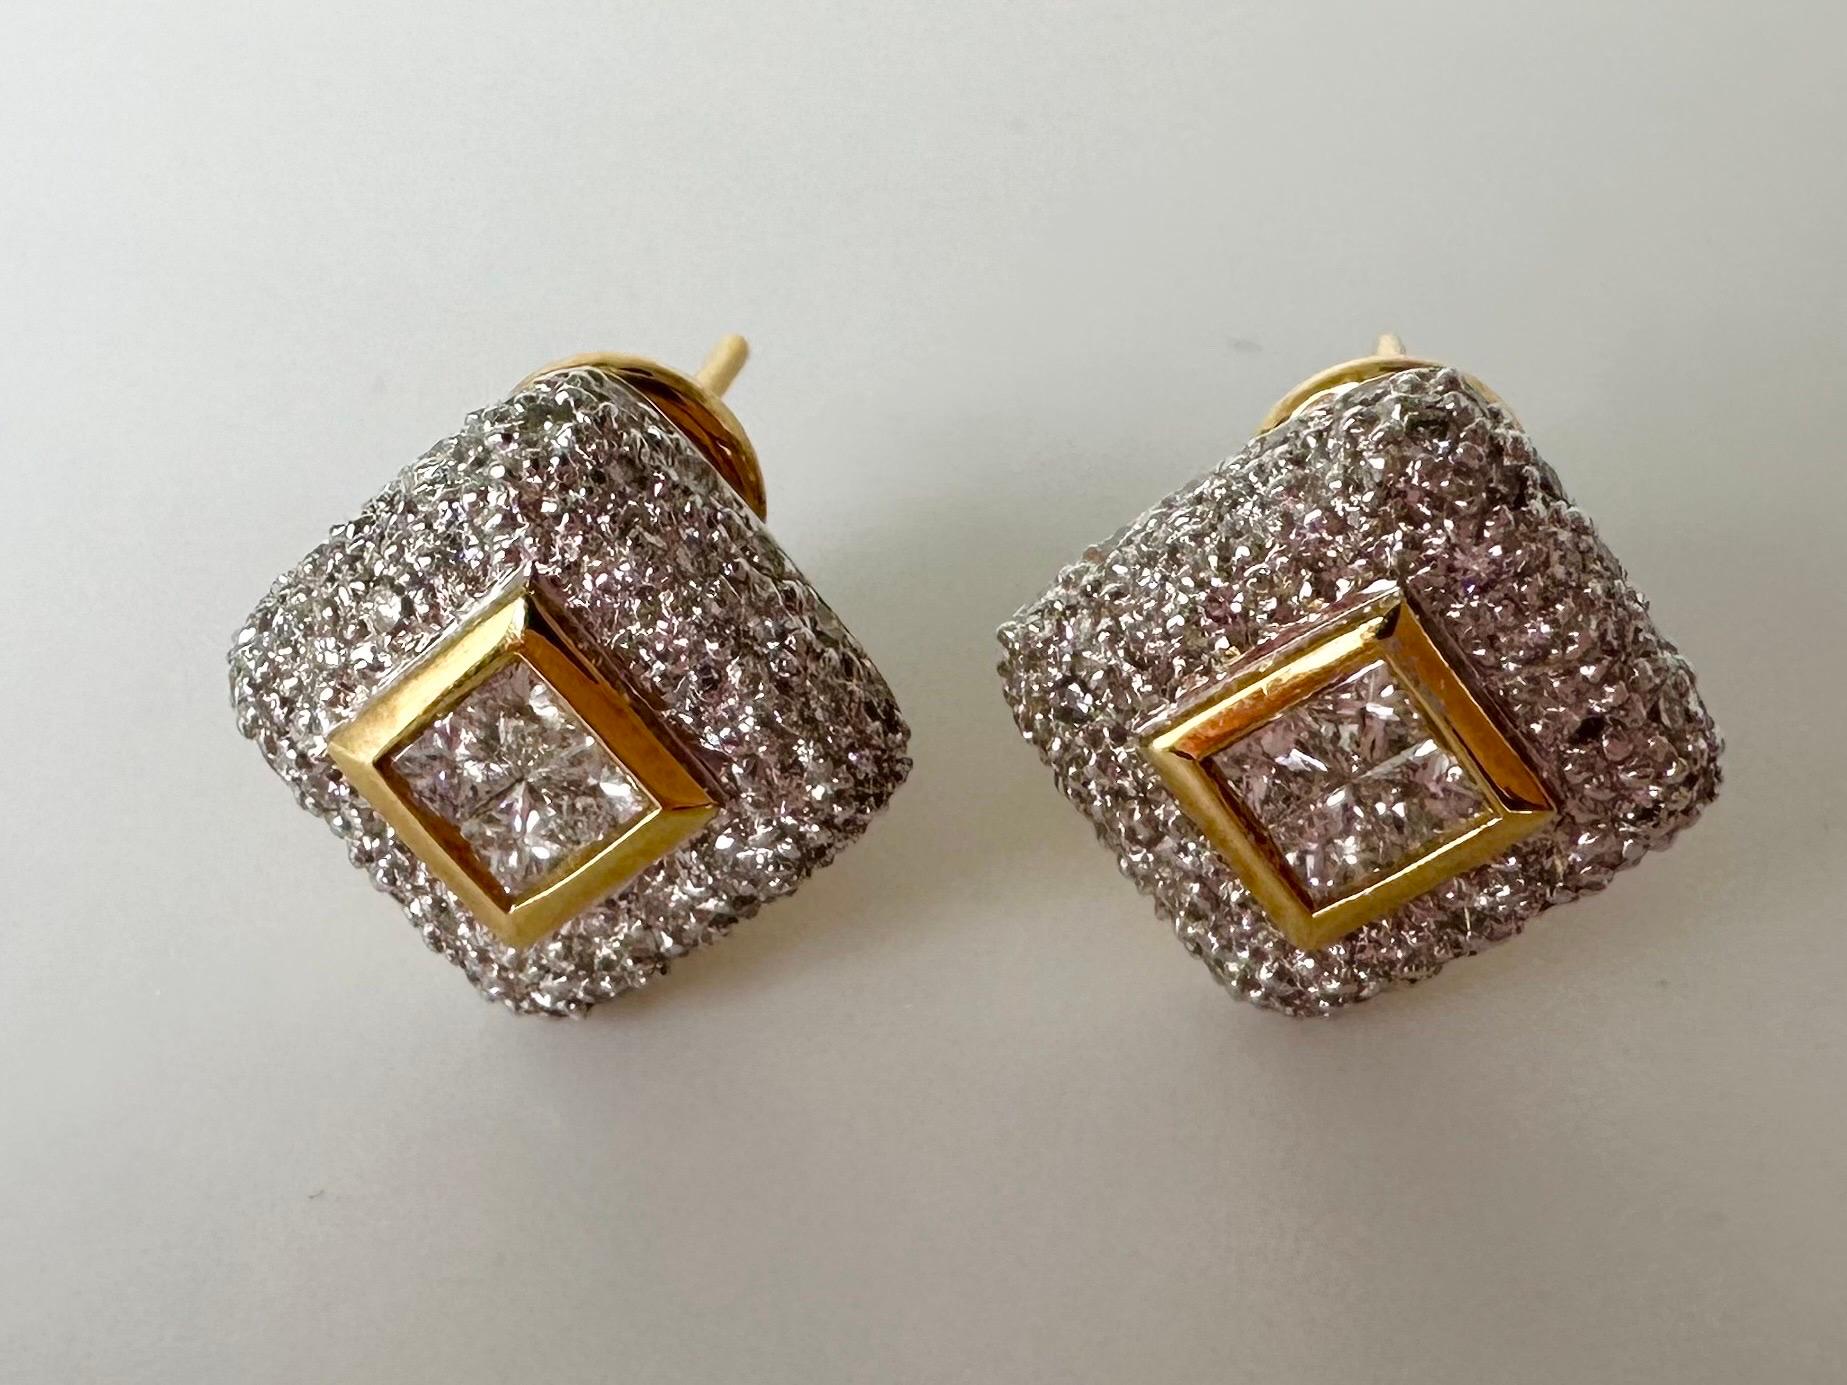 Pave diamond earrings 18KT white gold large omega diamond earrings For Sale 2